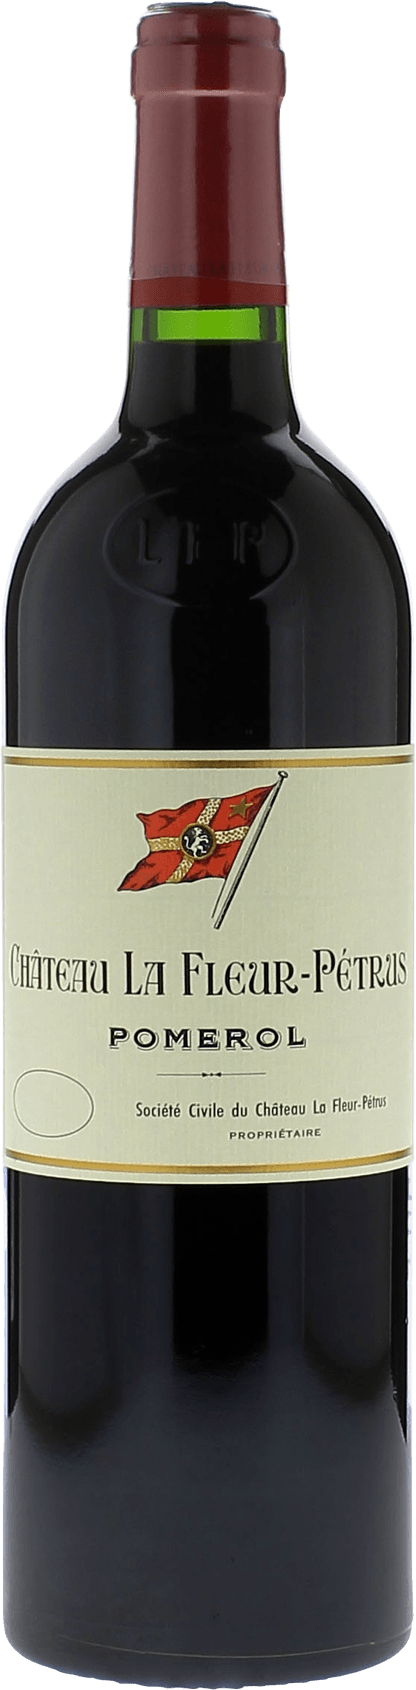 La fleur petrus 1967  Pomerol, Bordeaux rouge